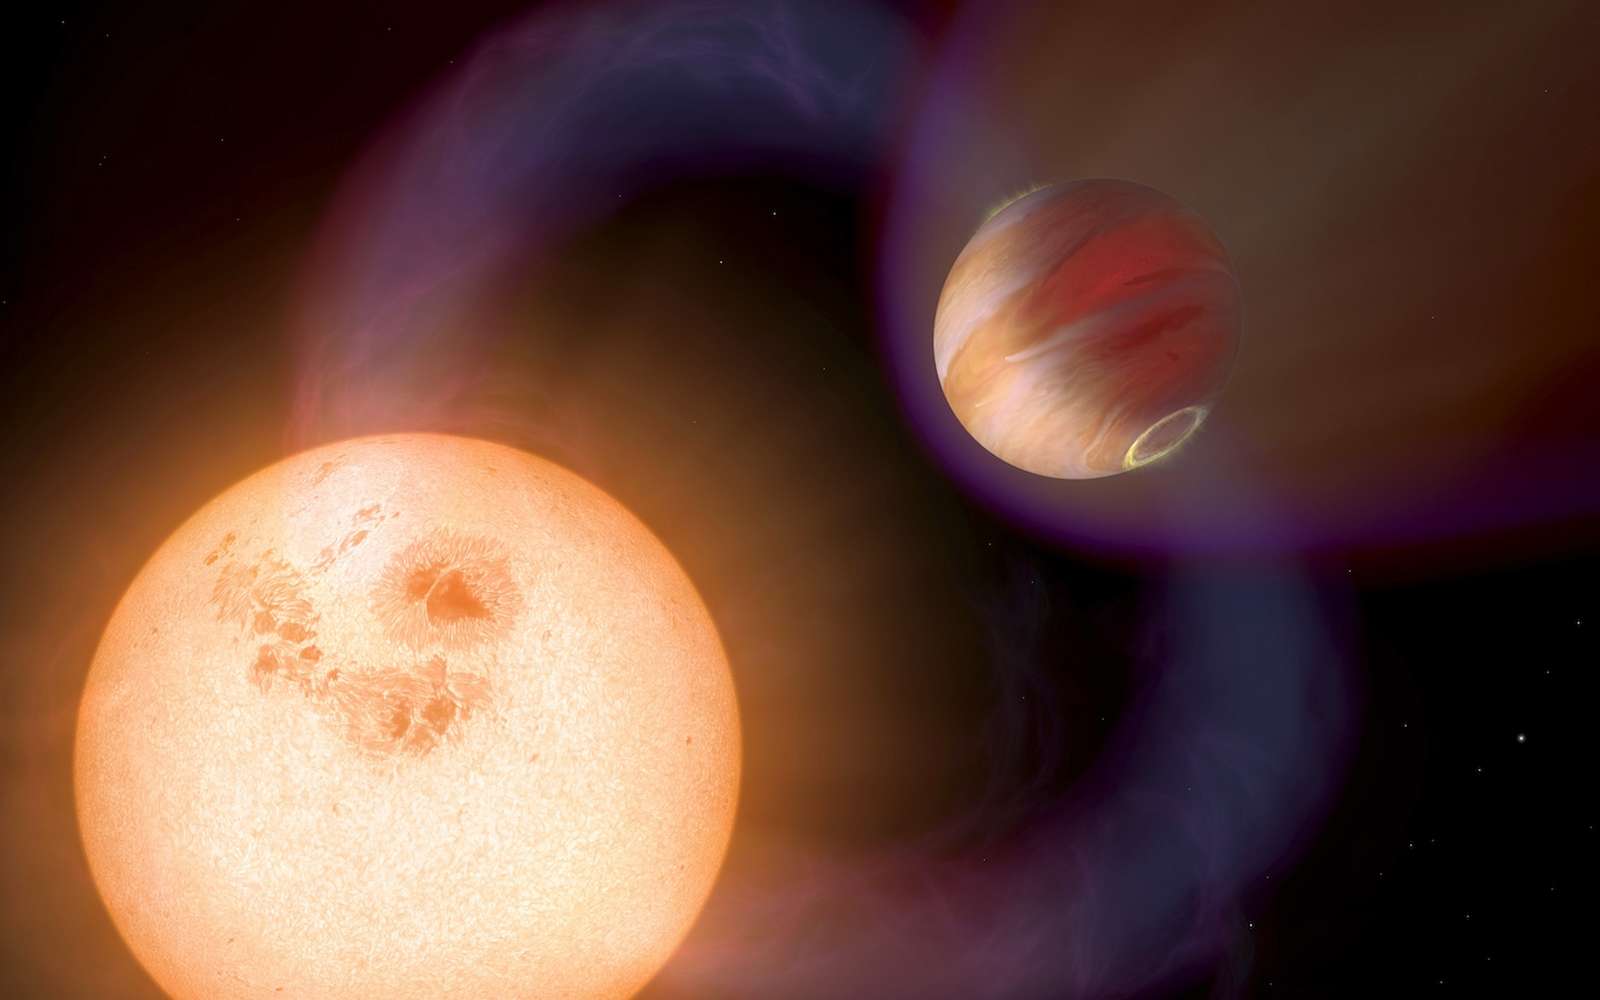 La majeure partie des exoplanètes sous forme de géante gazeuse détectée à ce jour est sous forme de Jupiter chaude comme le montre cette vue d'artiste. Mais on sait qu'il en existe qui sont froides. © Nasa, Esa A. Schaller